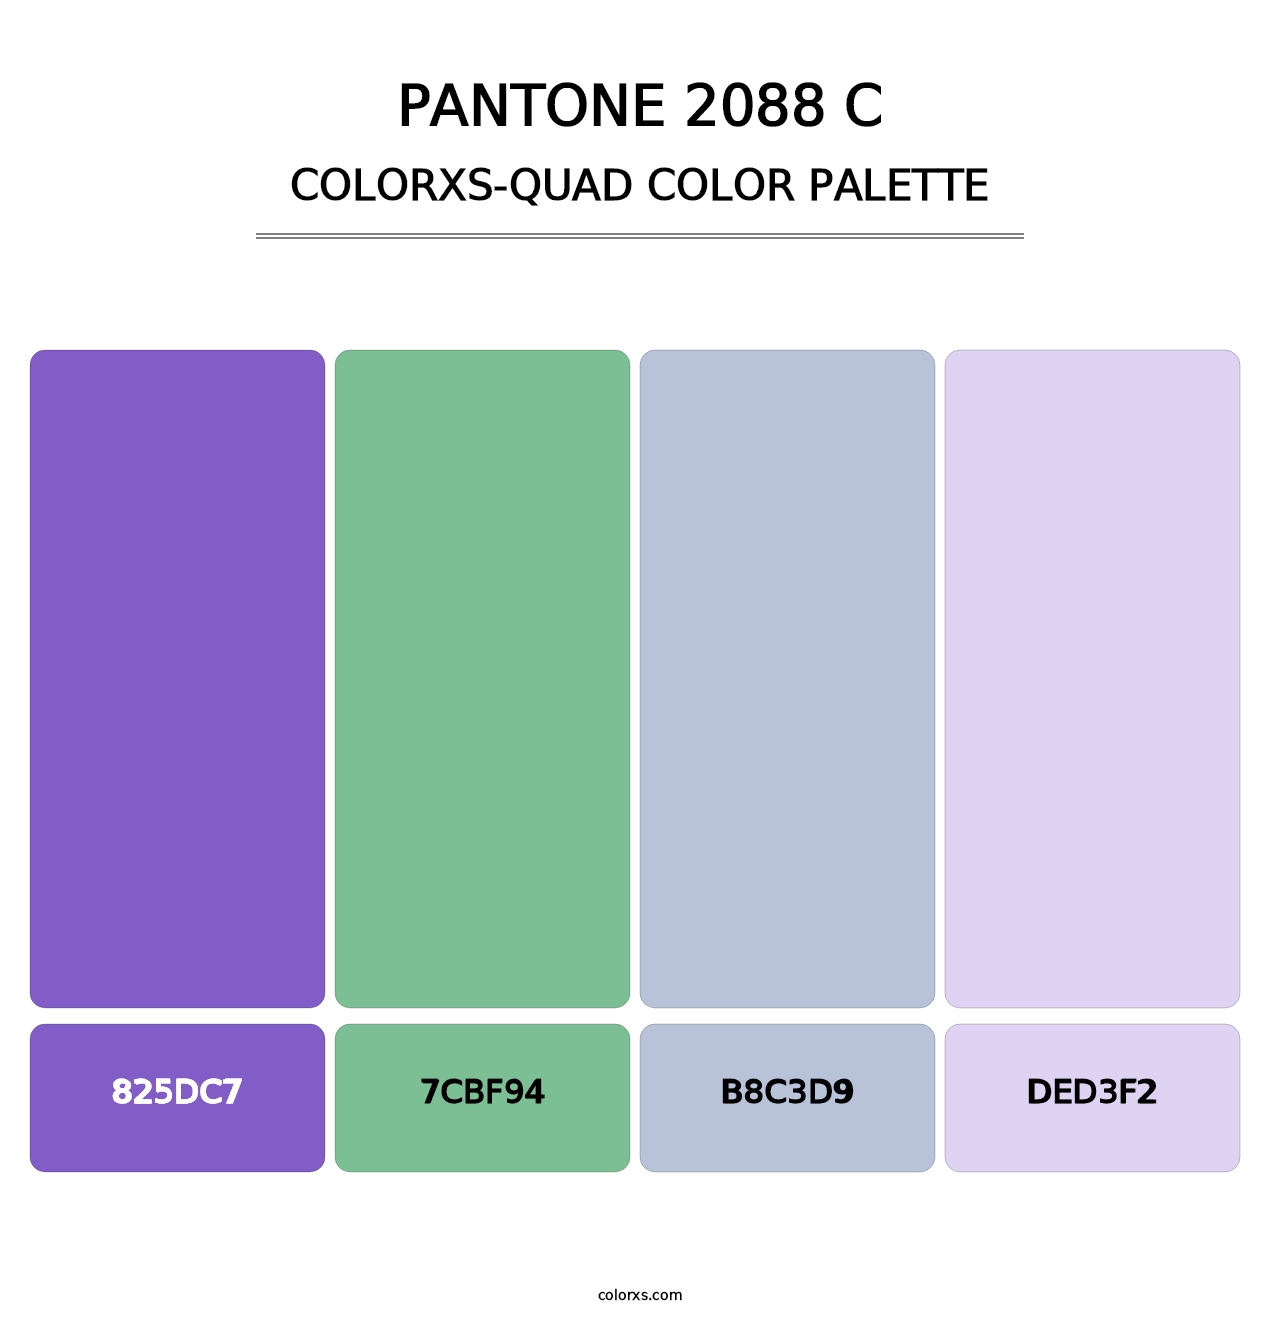 PANTONE 2088 C - Colorxs Quad Palette